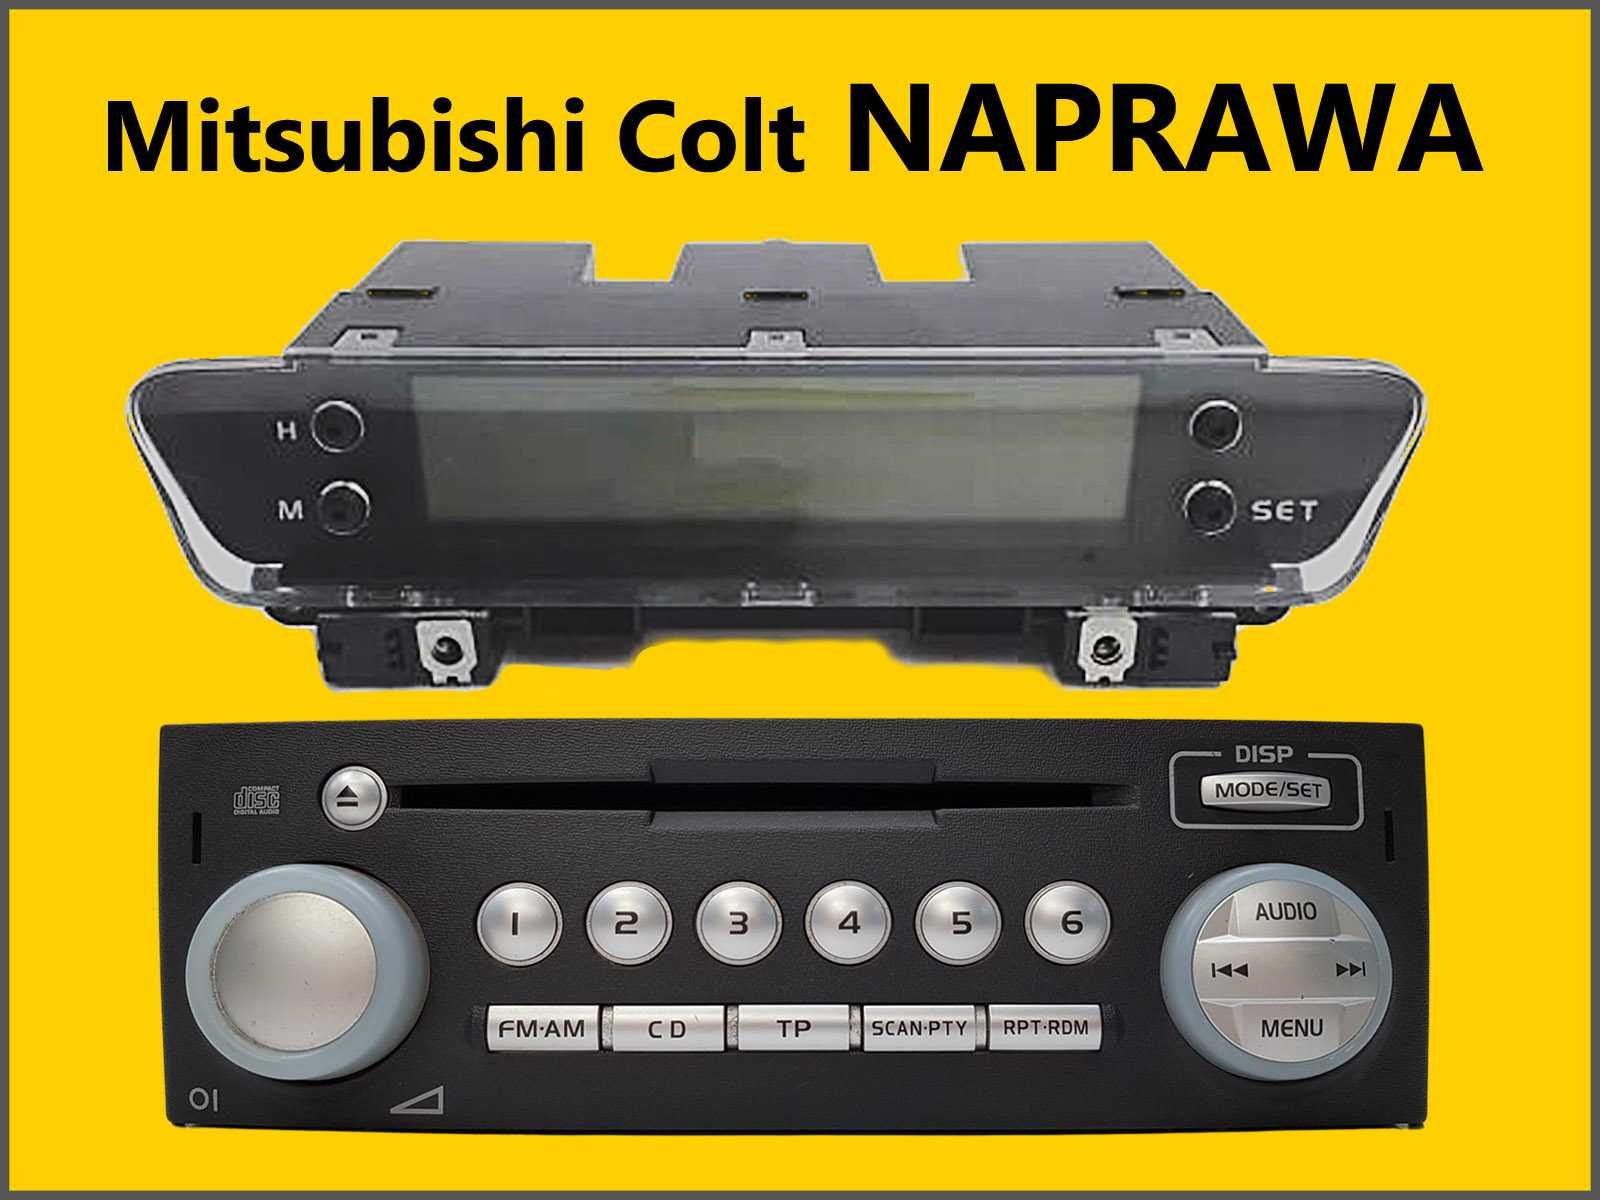 Wyświetlacz Radio Mitsubishi Colt  - NAPRAWA EKSPRESOWO - Gwarancja FV